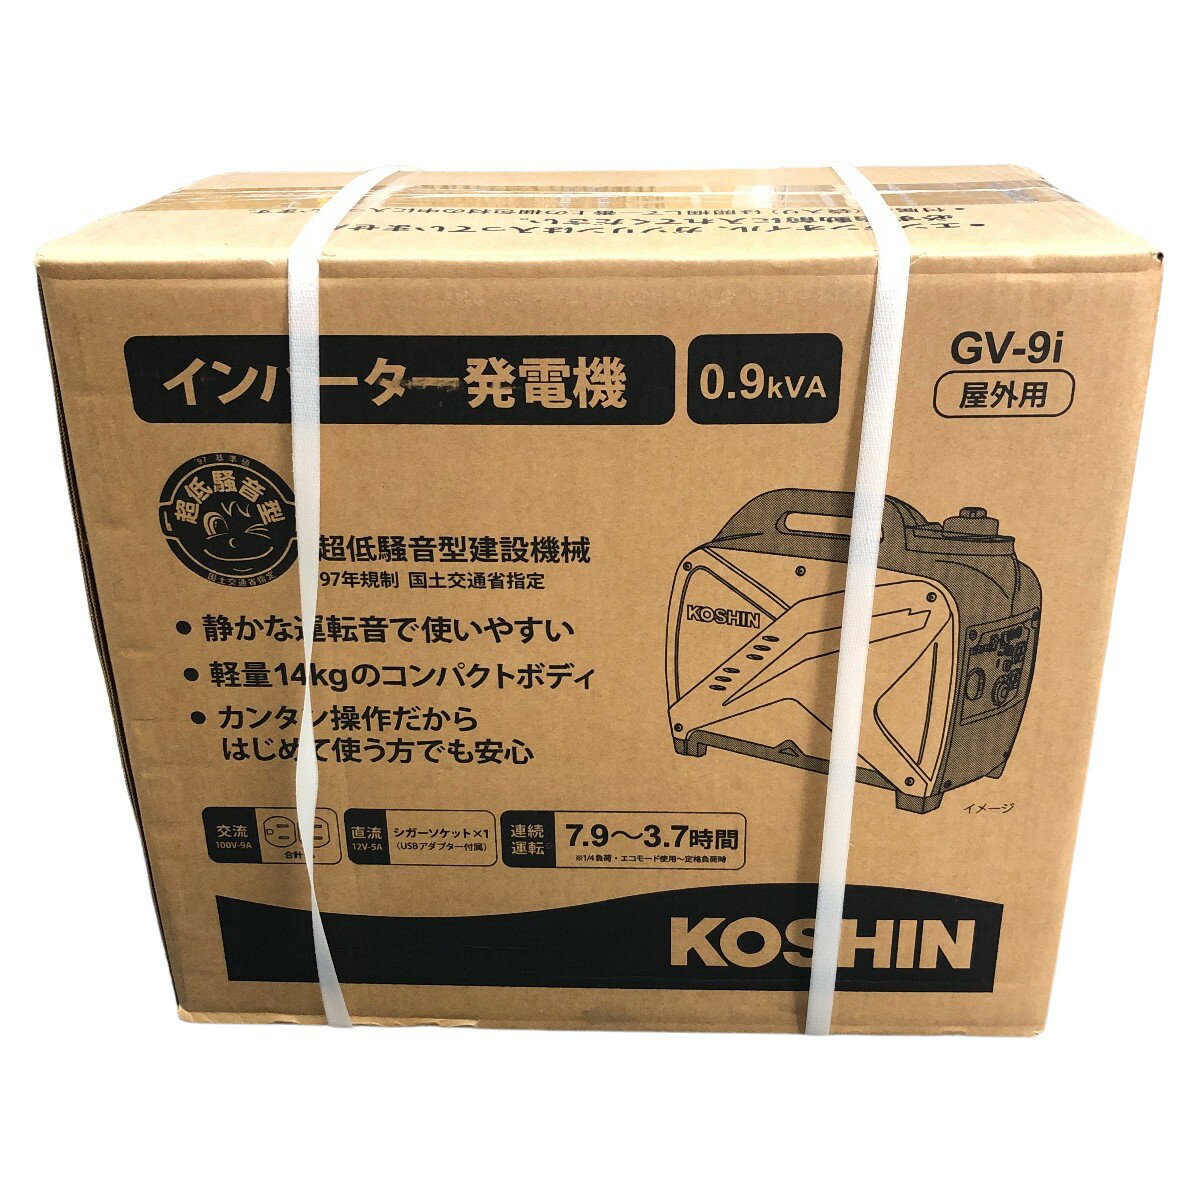 □□【中古】KOSHIN インバーター発電機 GV-9i Sランク